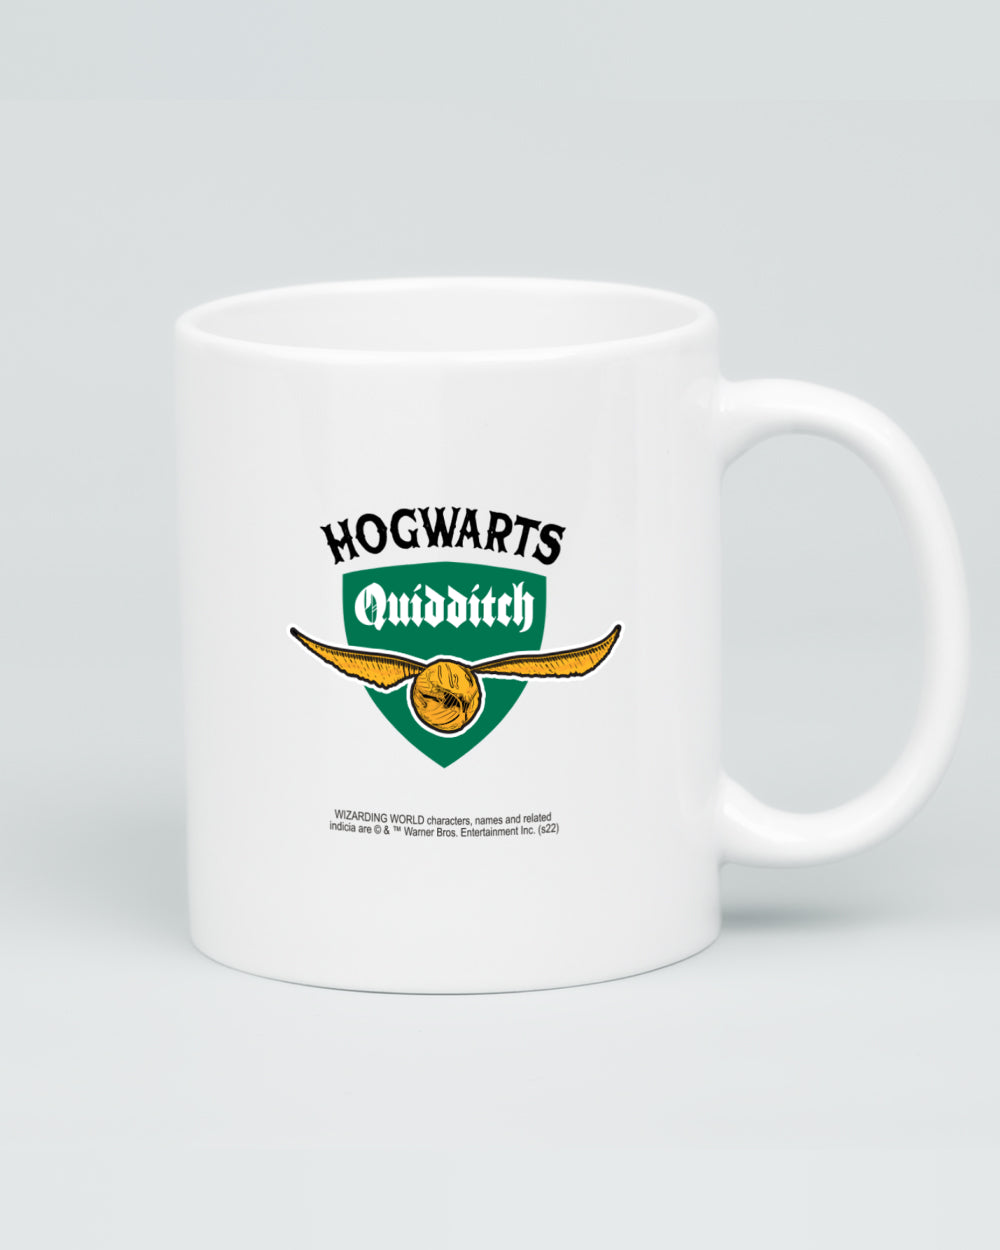 Slytherin Quidditch Team Mug | Threadheads